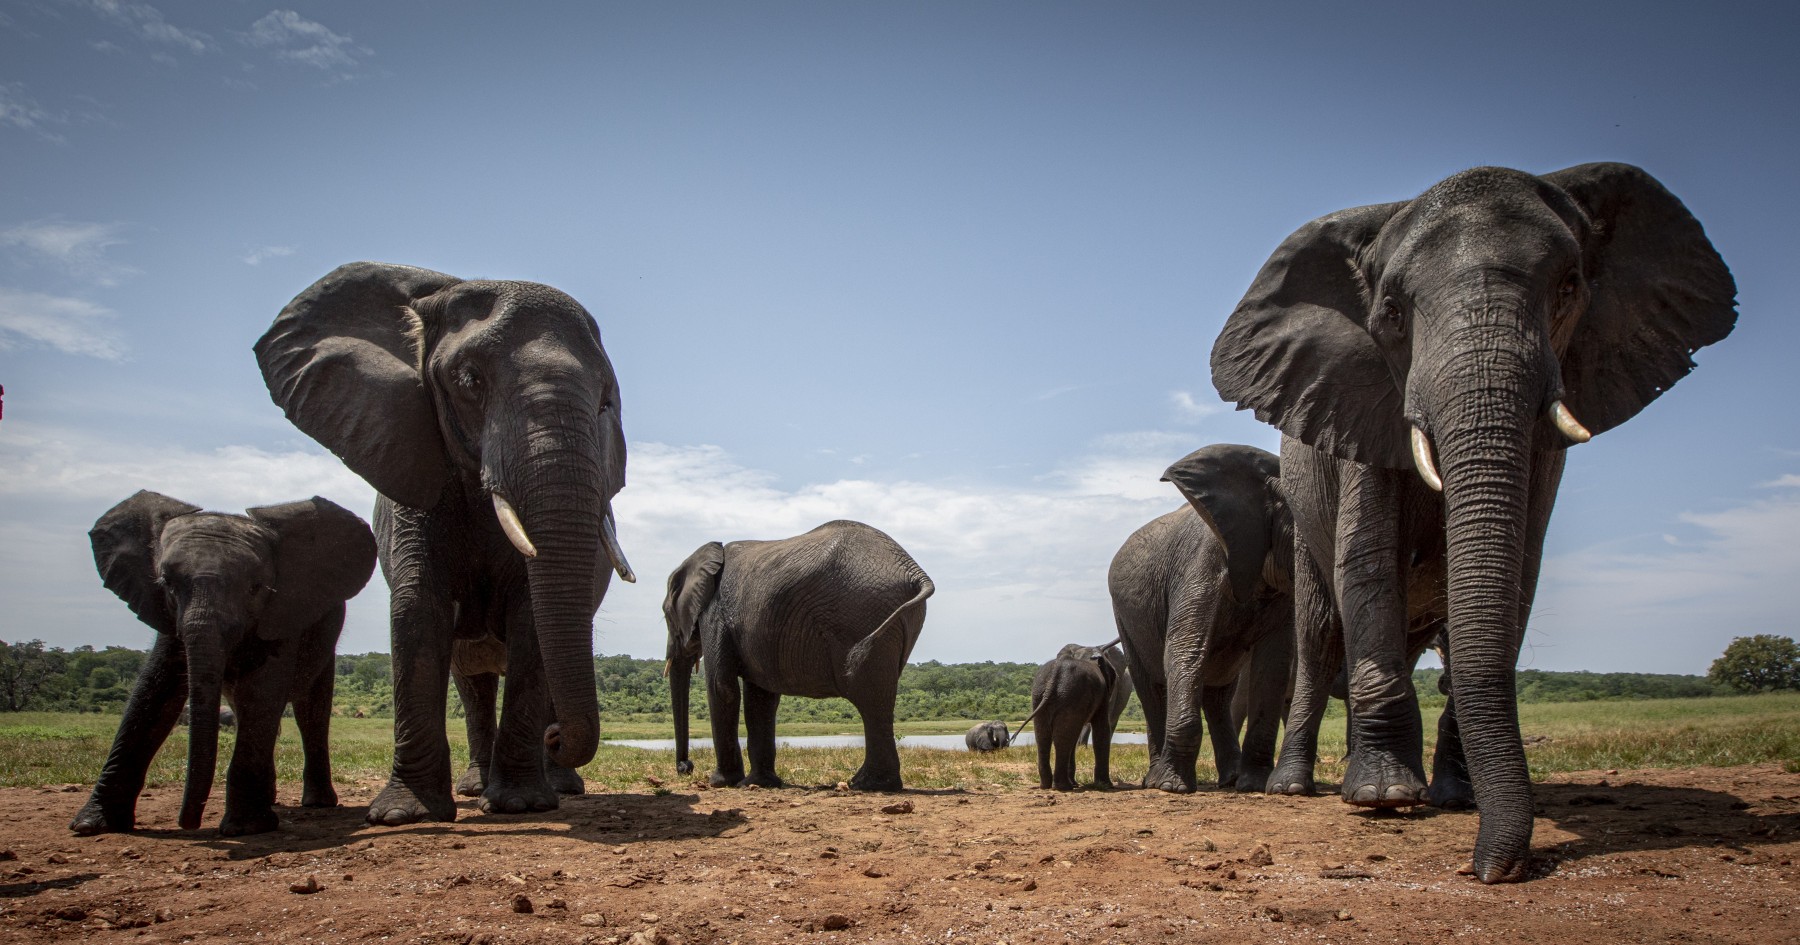 A heard of elephants walking in the wild